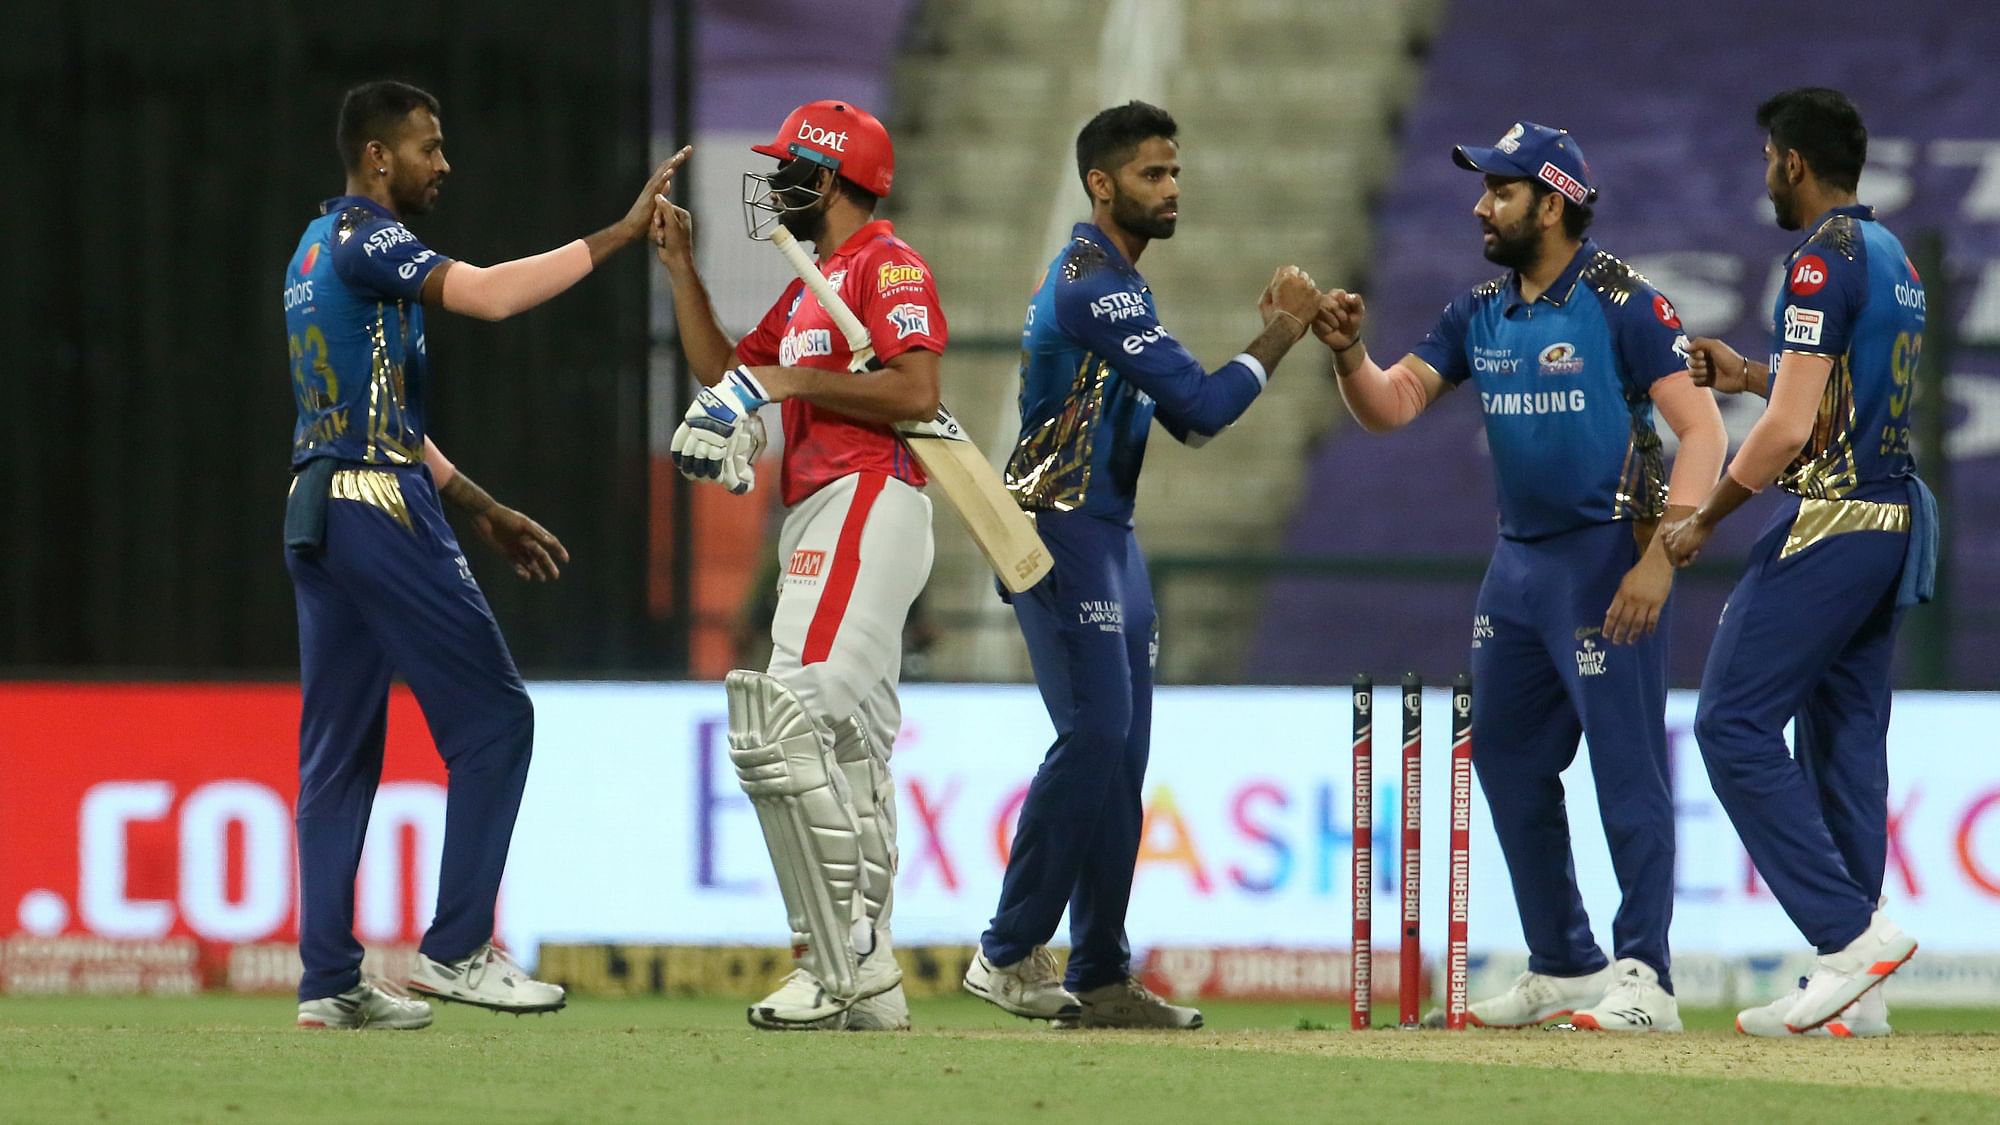 Mumbai Indians beat Kings XI Punjab by 48 runs at Abu Dhabi in IPL 2020’s 13th match.